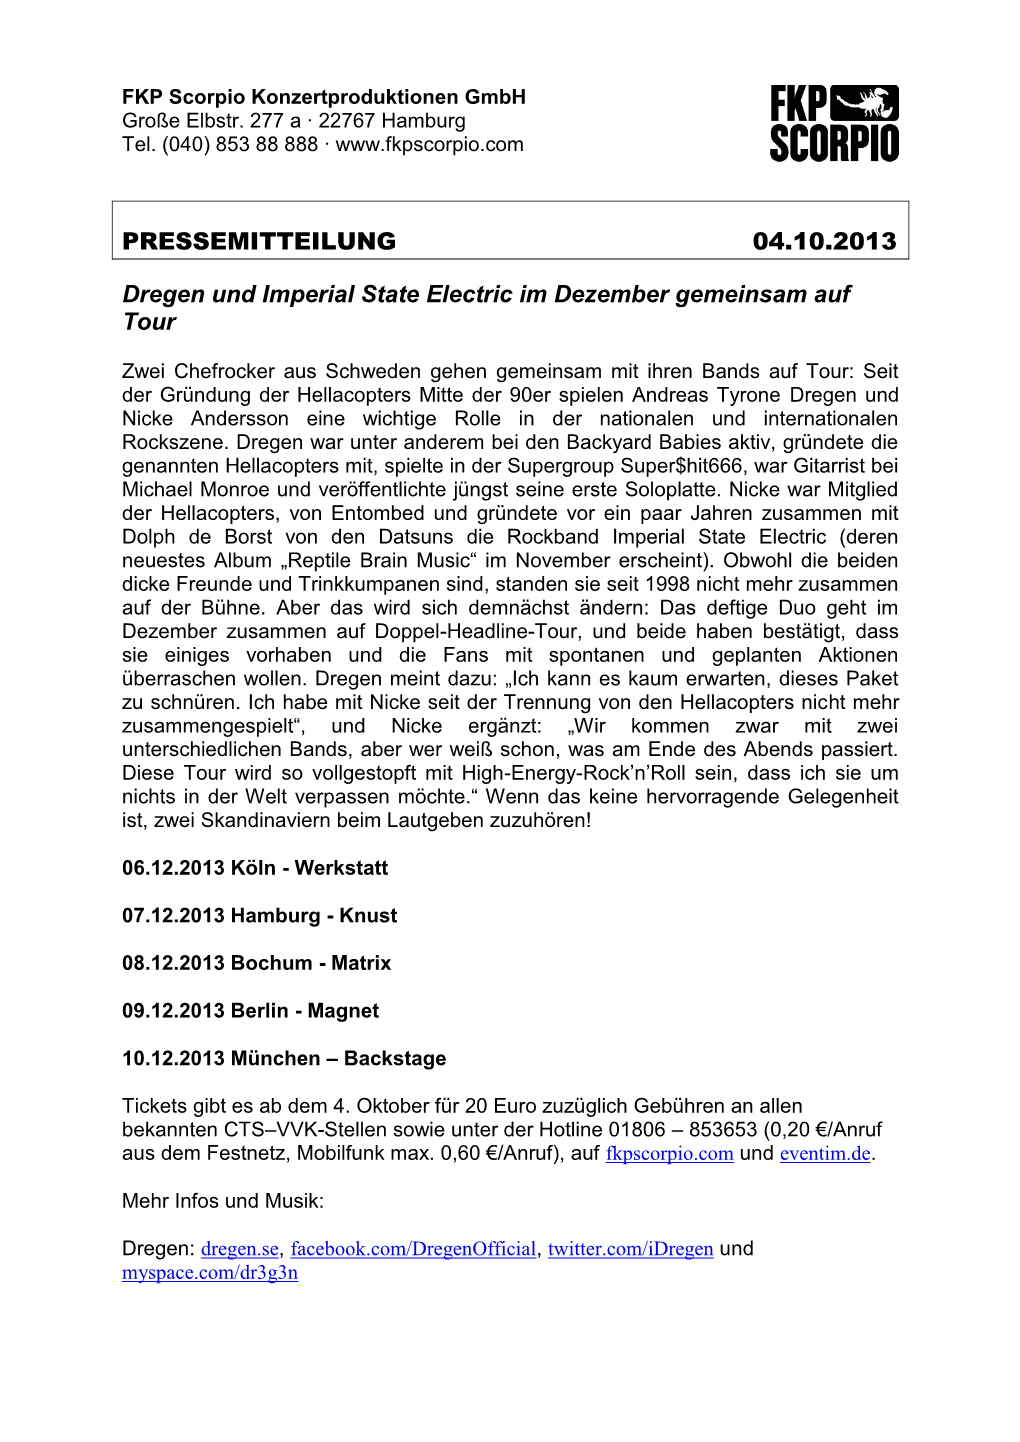 PRESSEMITTEILUNG 04.10.2013 Dregen Und Imperial State Electric